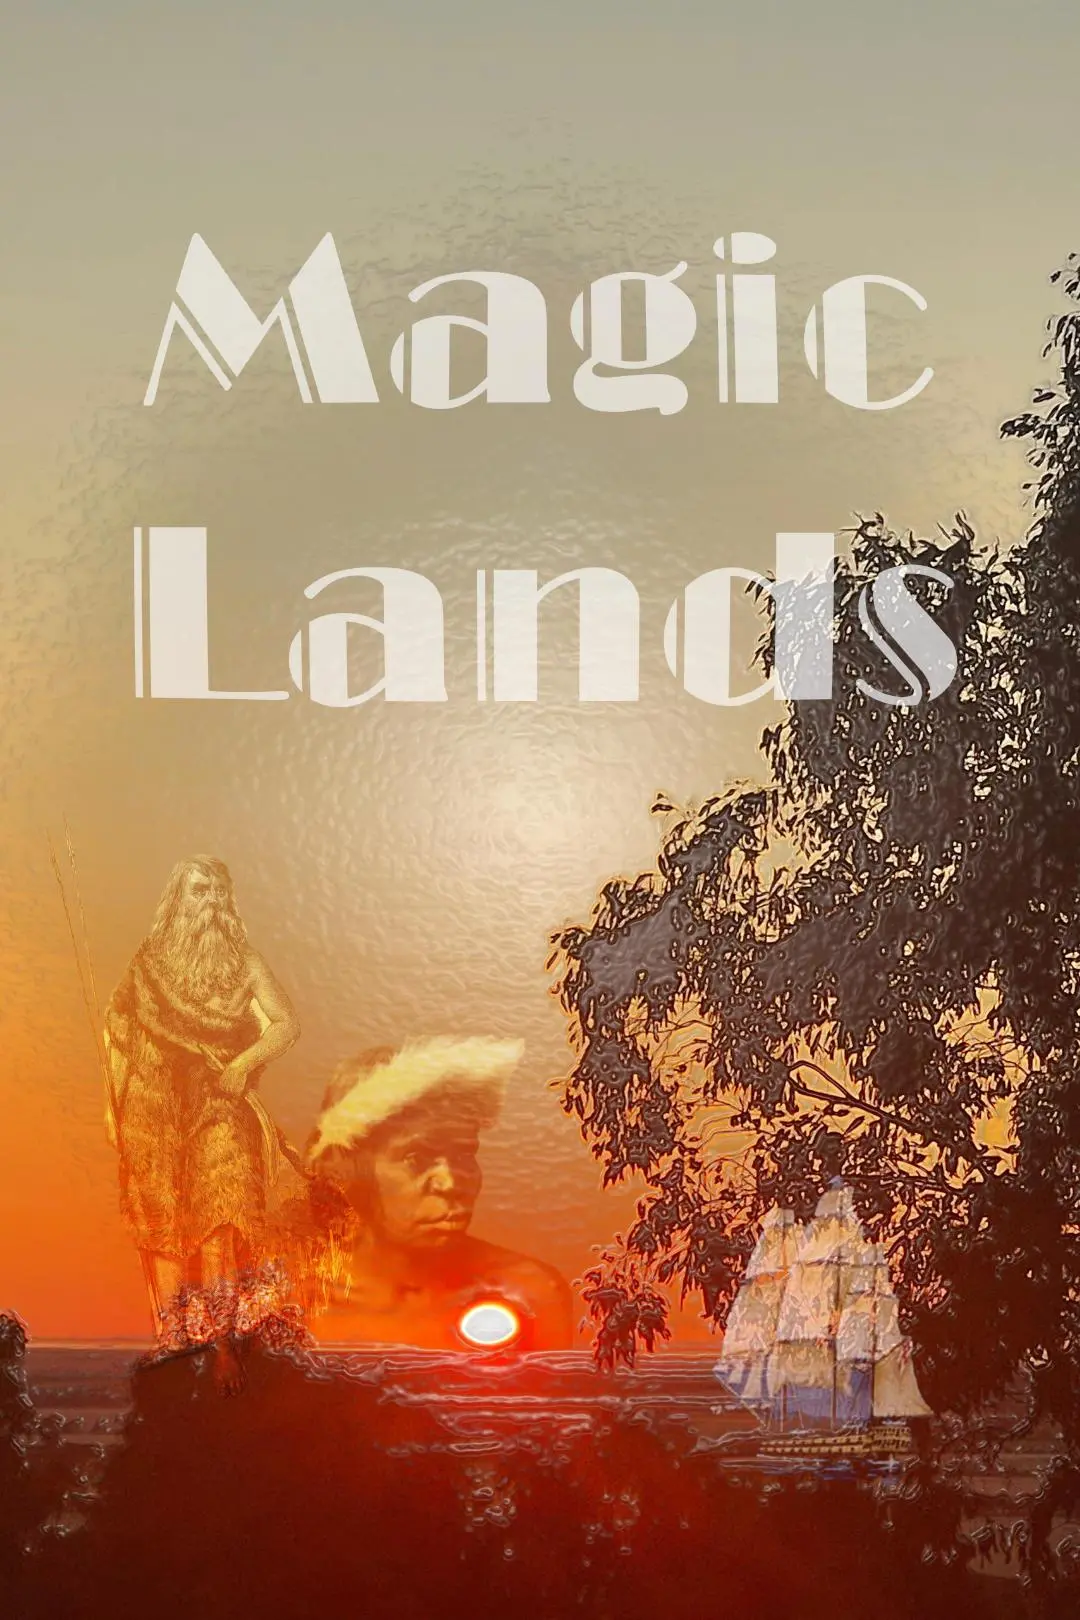 Magic Lands_peliplat